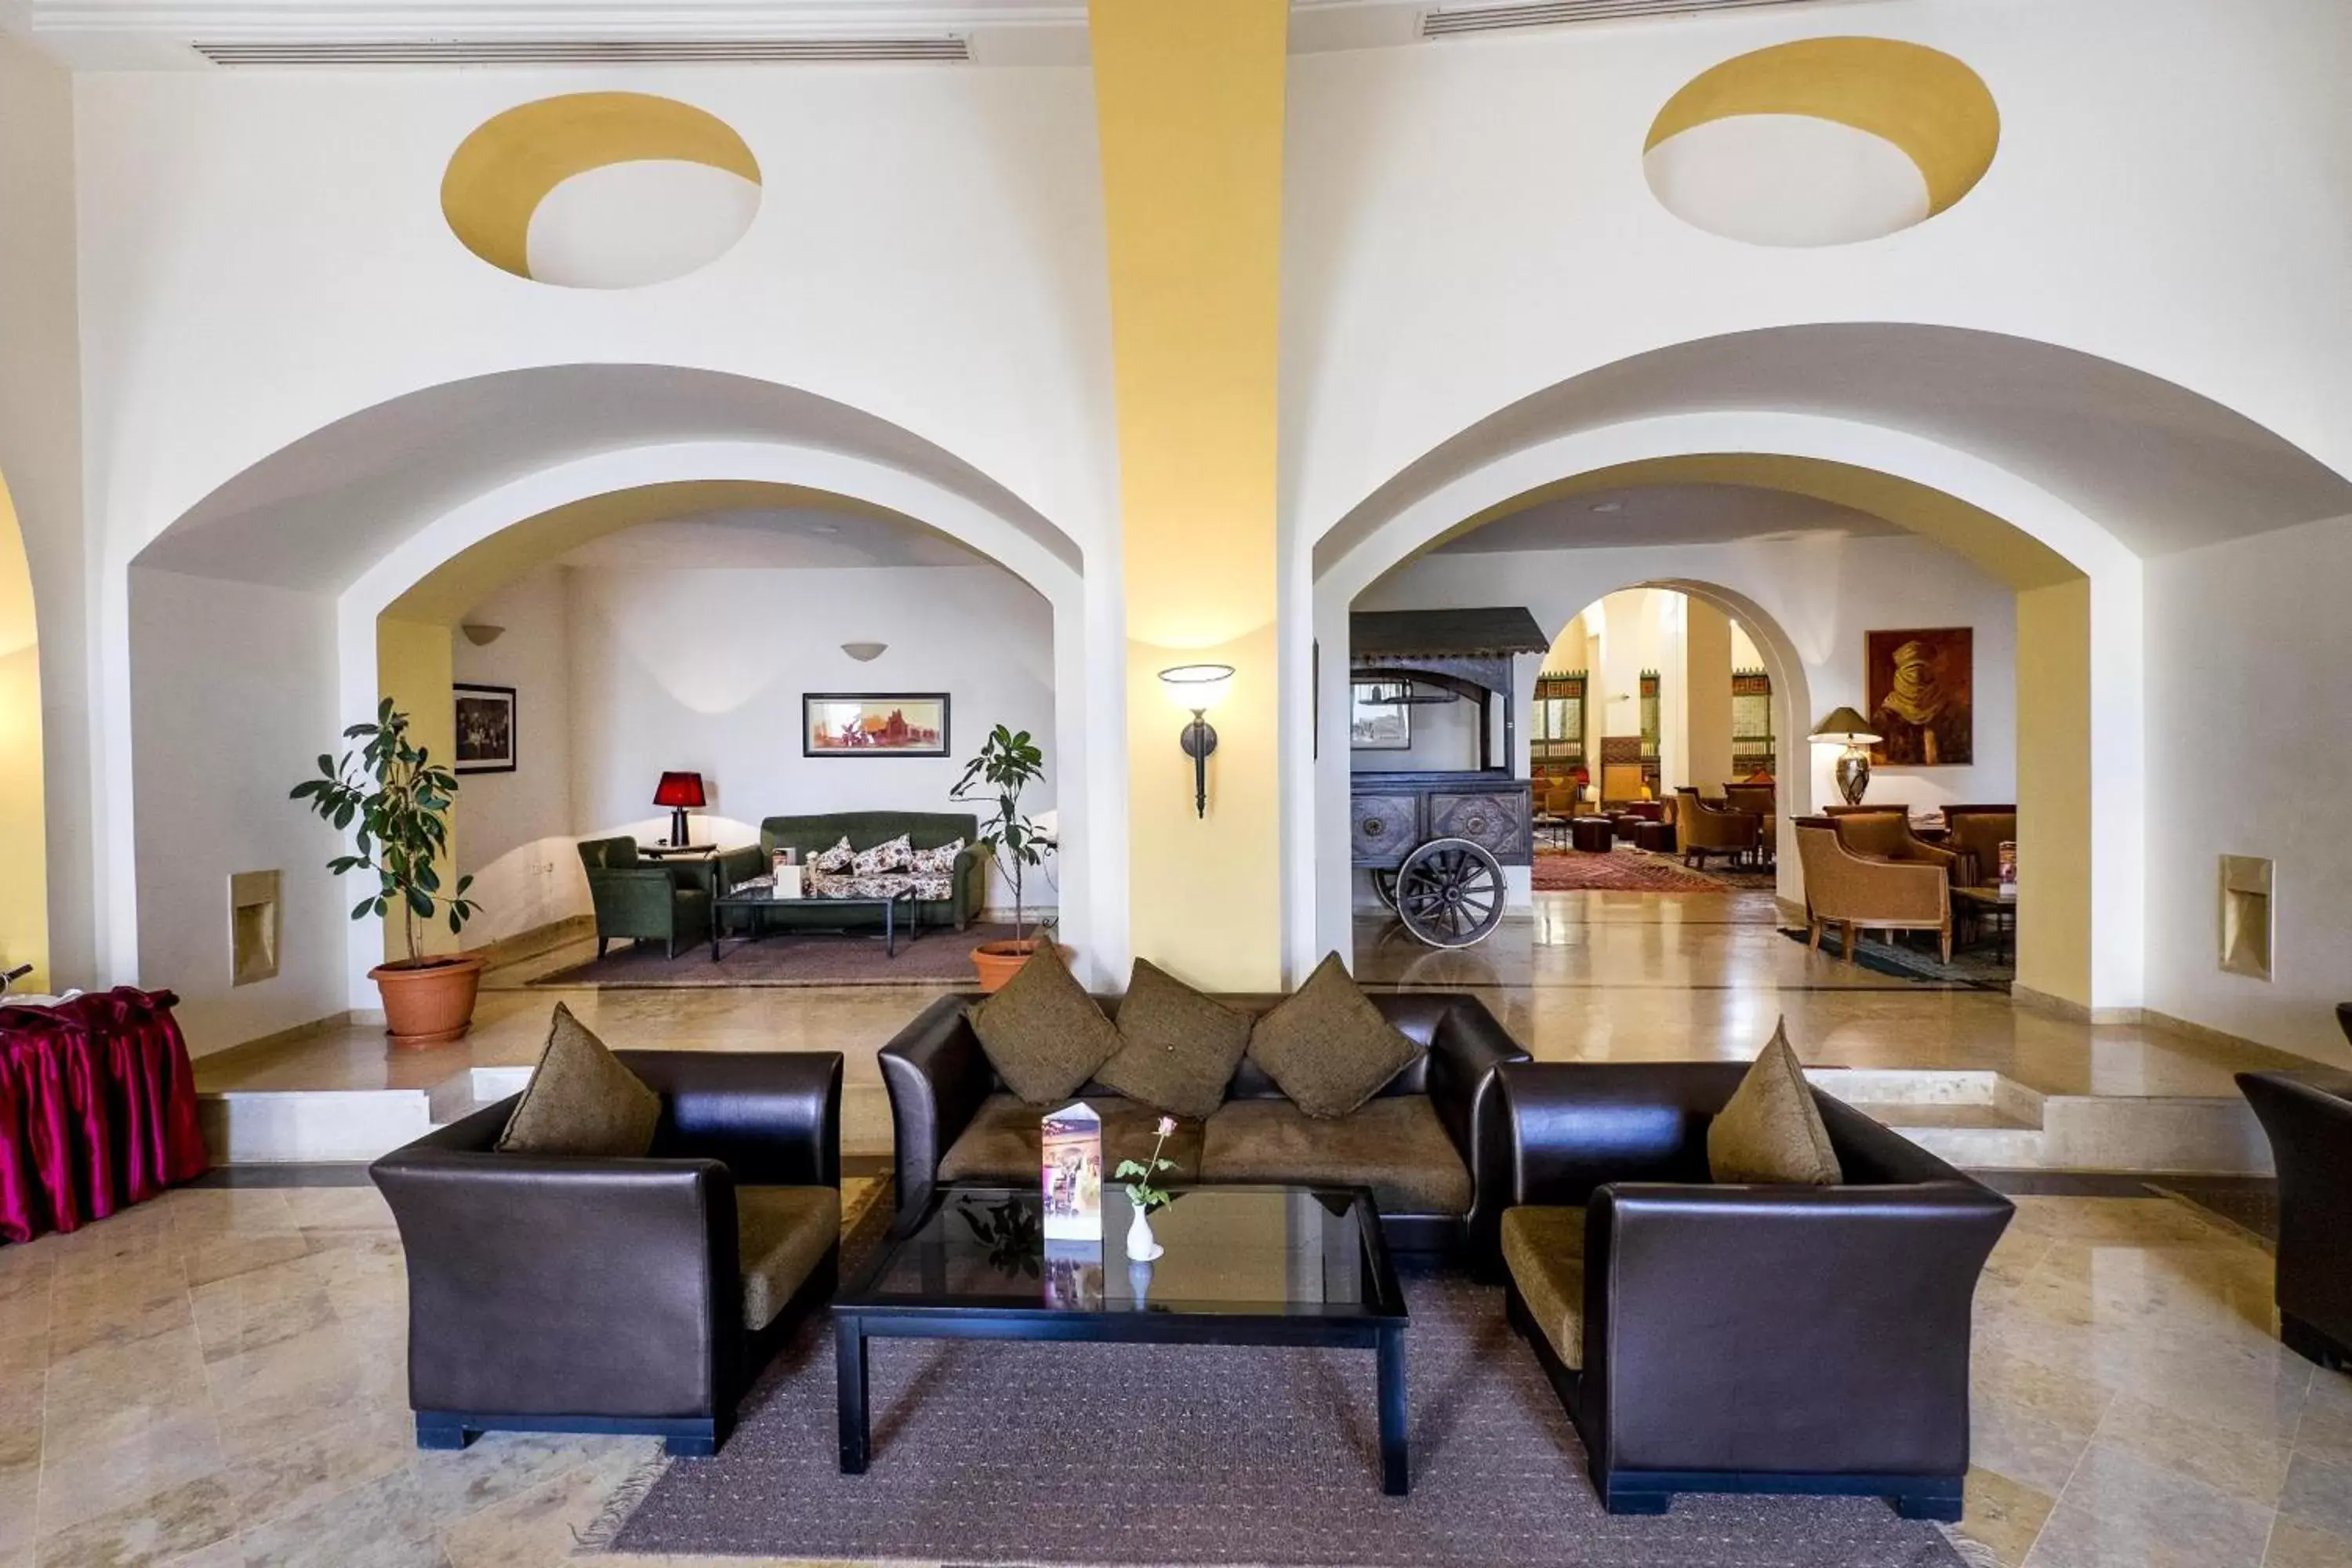 Lobby or reception, Lobby/Reception in Medina Solaria And Thalasso